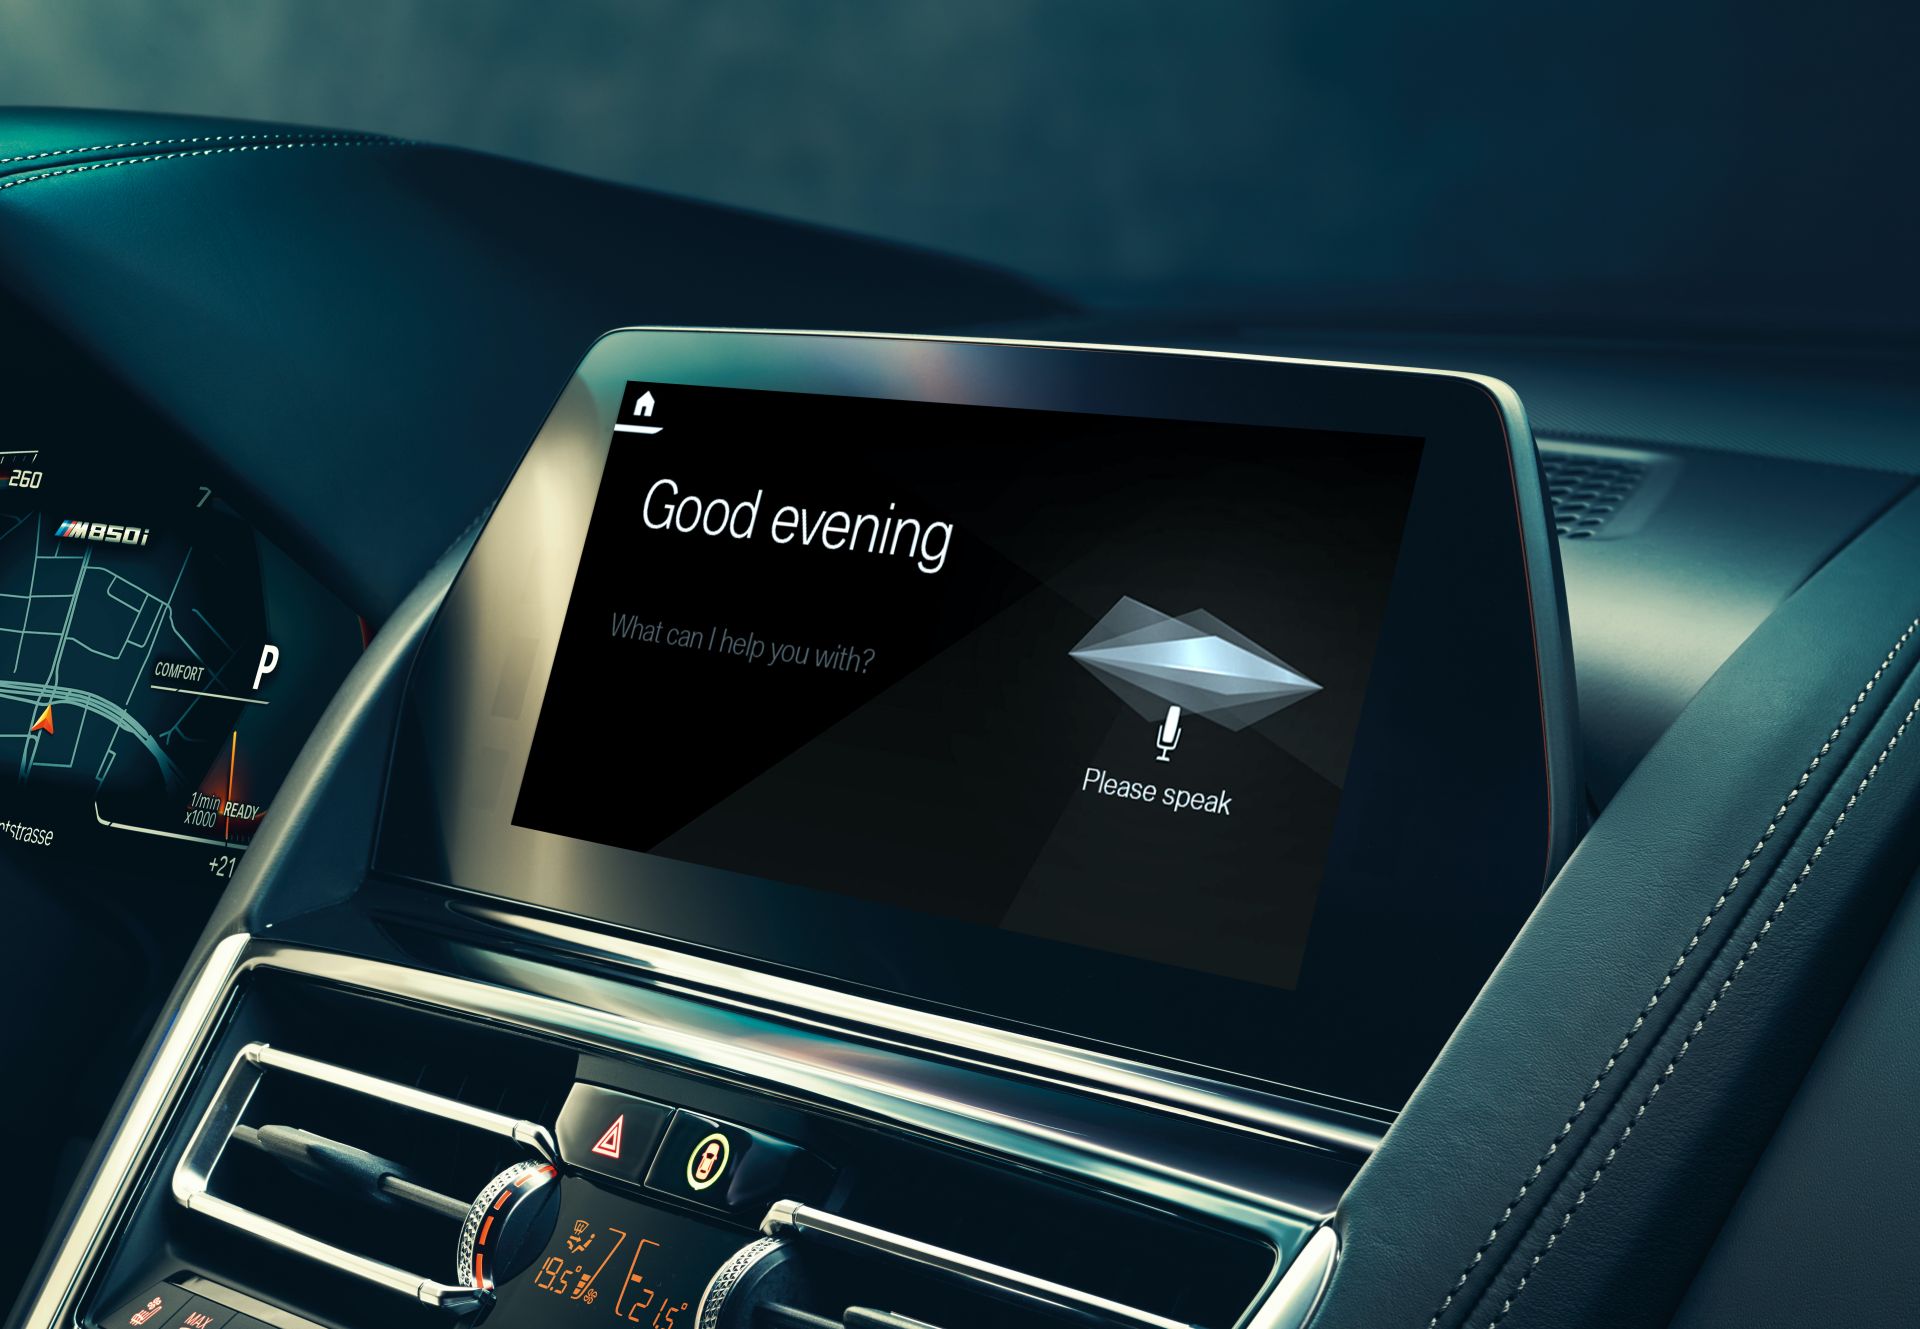 BMW Intelligent Personal Assistant — одно из более чем 400 приложений искусственного интеллекта компании / © BMW Group